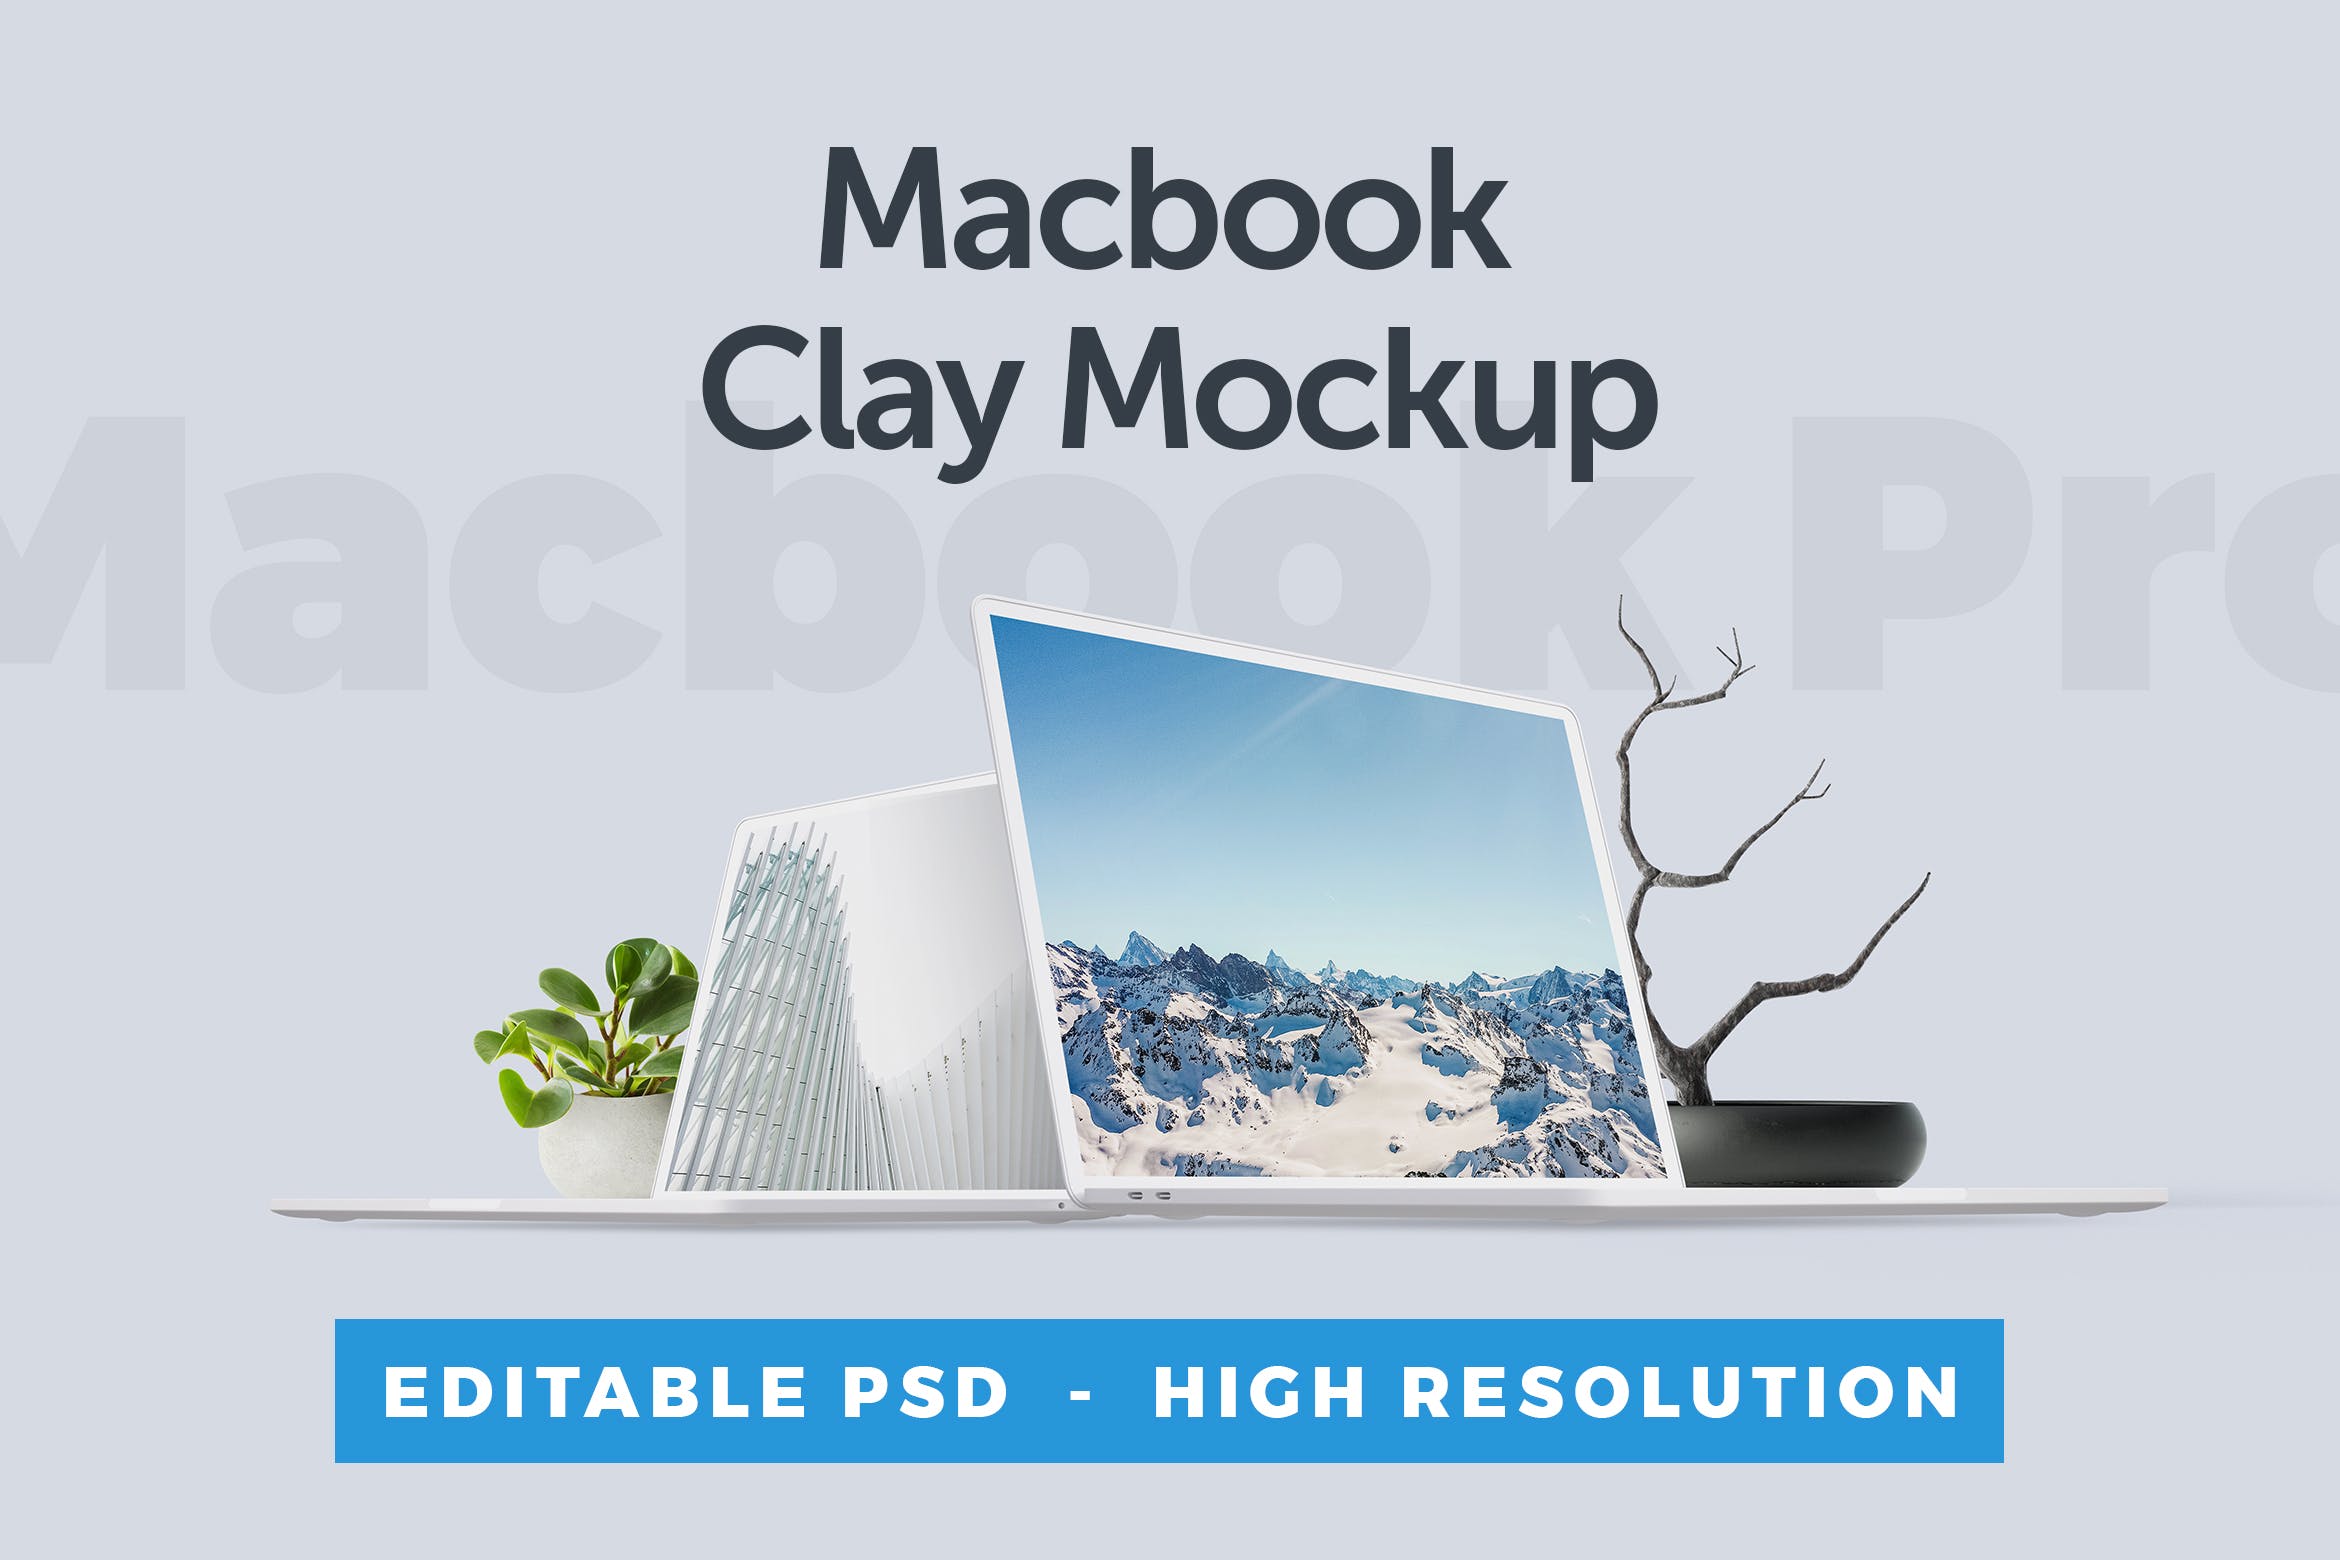 MacBook笔记本电脑屏幕演示第一素材精选样机 Macbook Clay Mockup插图